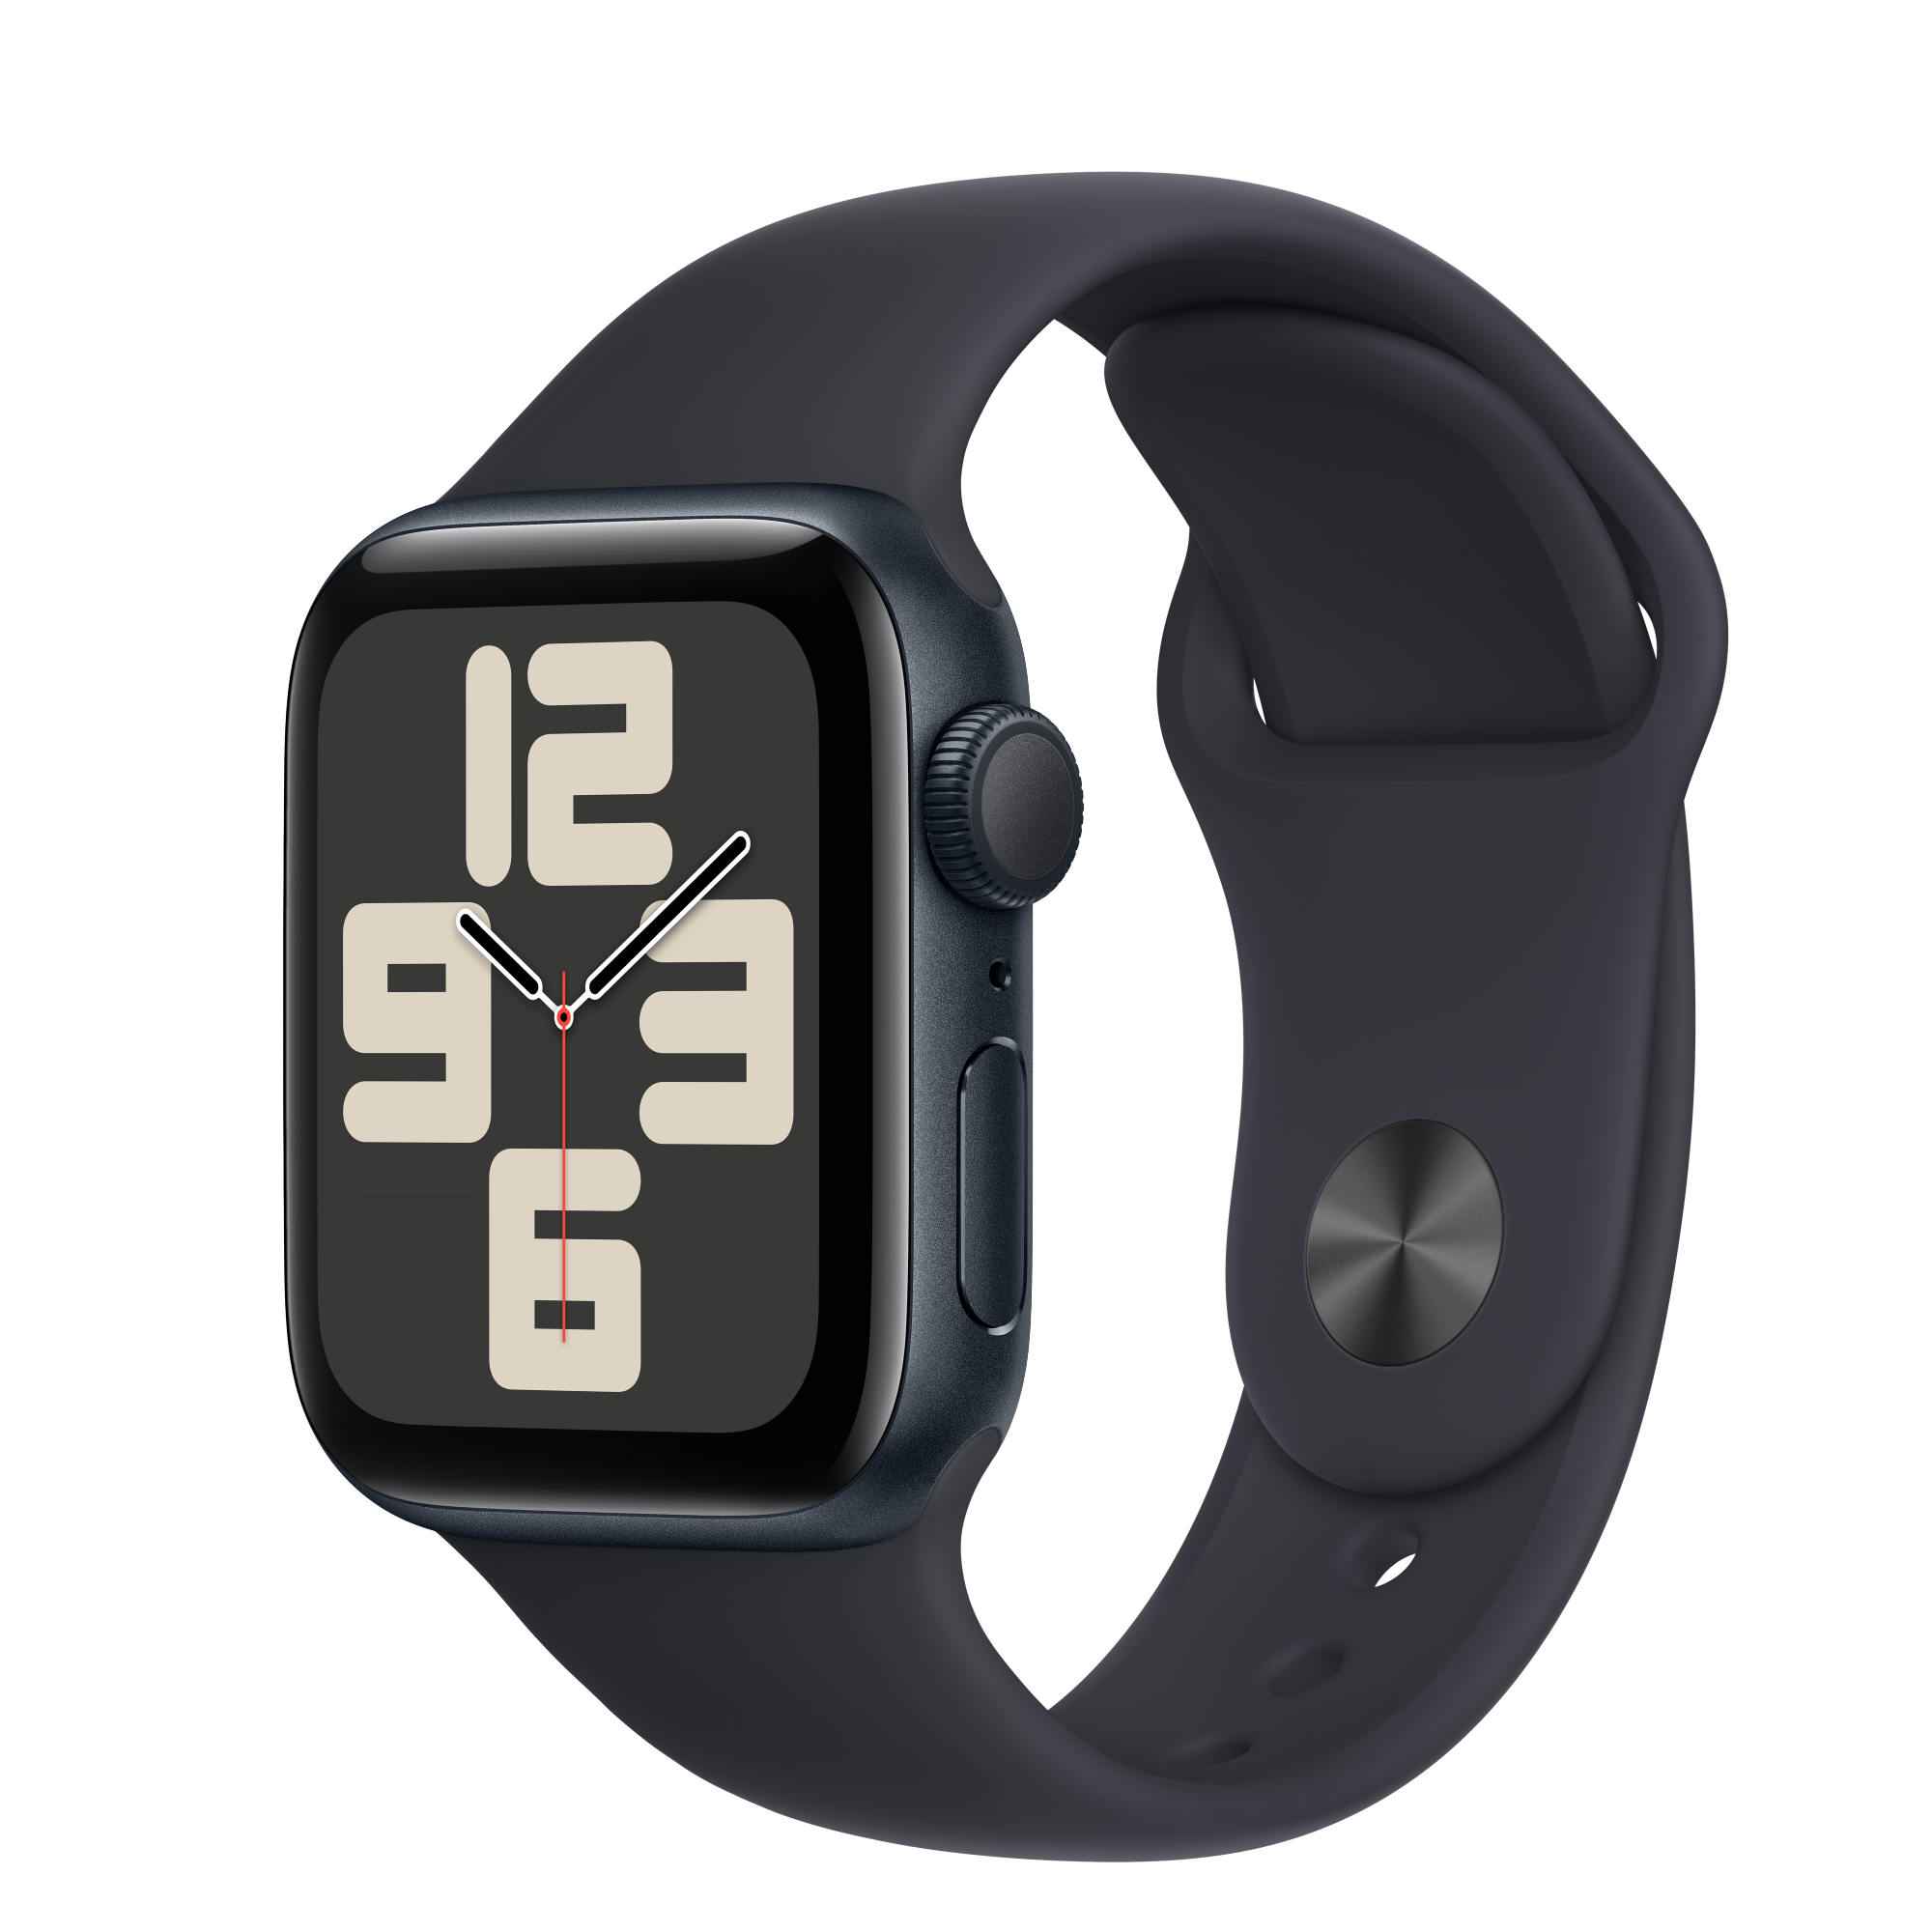 【最高22%點數】Apple Watch SE (new)(GPS)午夜色鋁金屬錶殼配午夜色運動錶帶 40mm(S/M)(MR9X3TA/A) 商品未拆未使用可以7天內申請退貨,退貨運費由買家負擔 如果拆封使用只能走維修保固,您可以再下單唷【限定樂天APP下單】